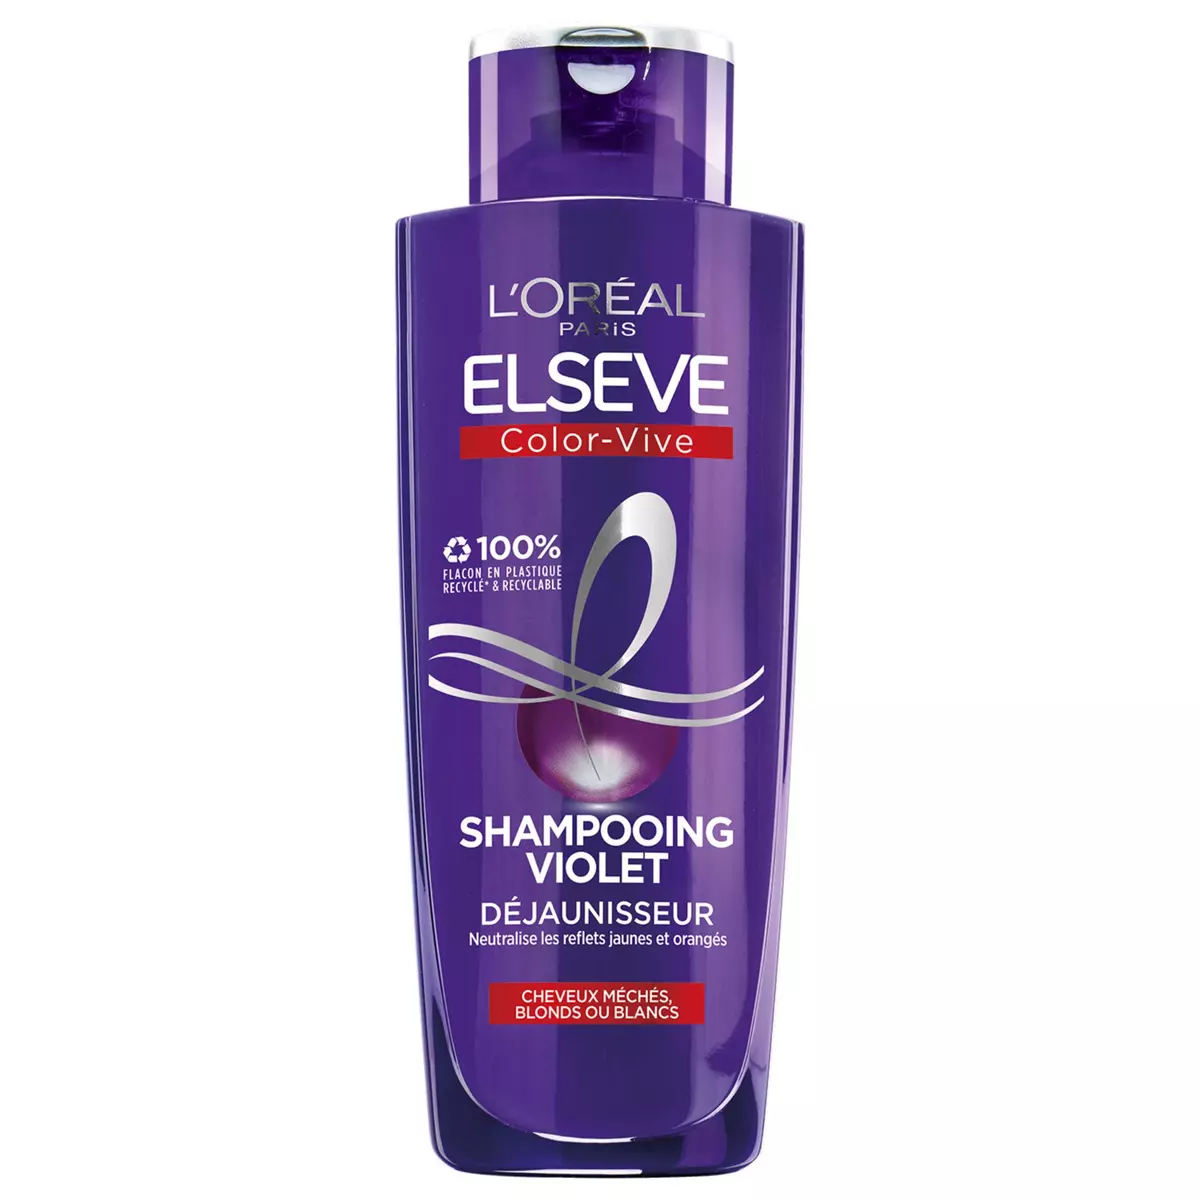 ELSEVE Color Vive shampooing violet déjaunisseur cheveux blonds/blancs 200ml